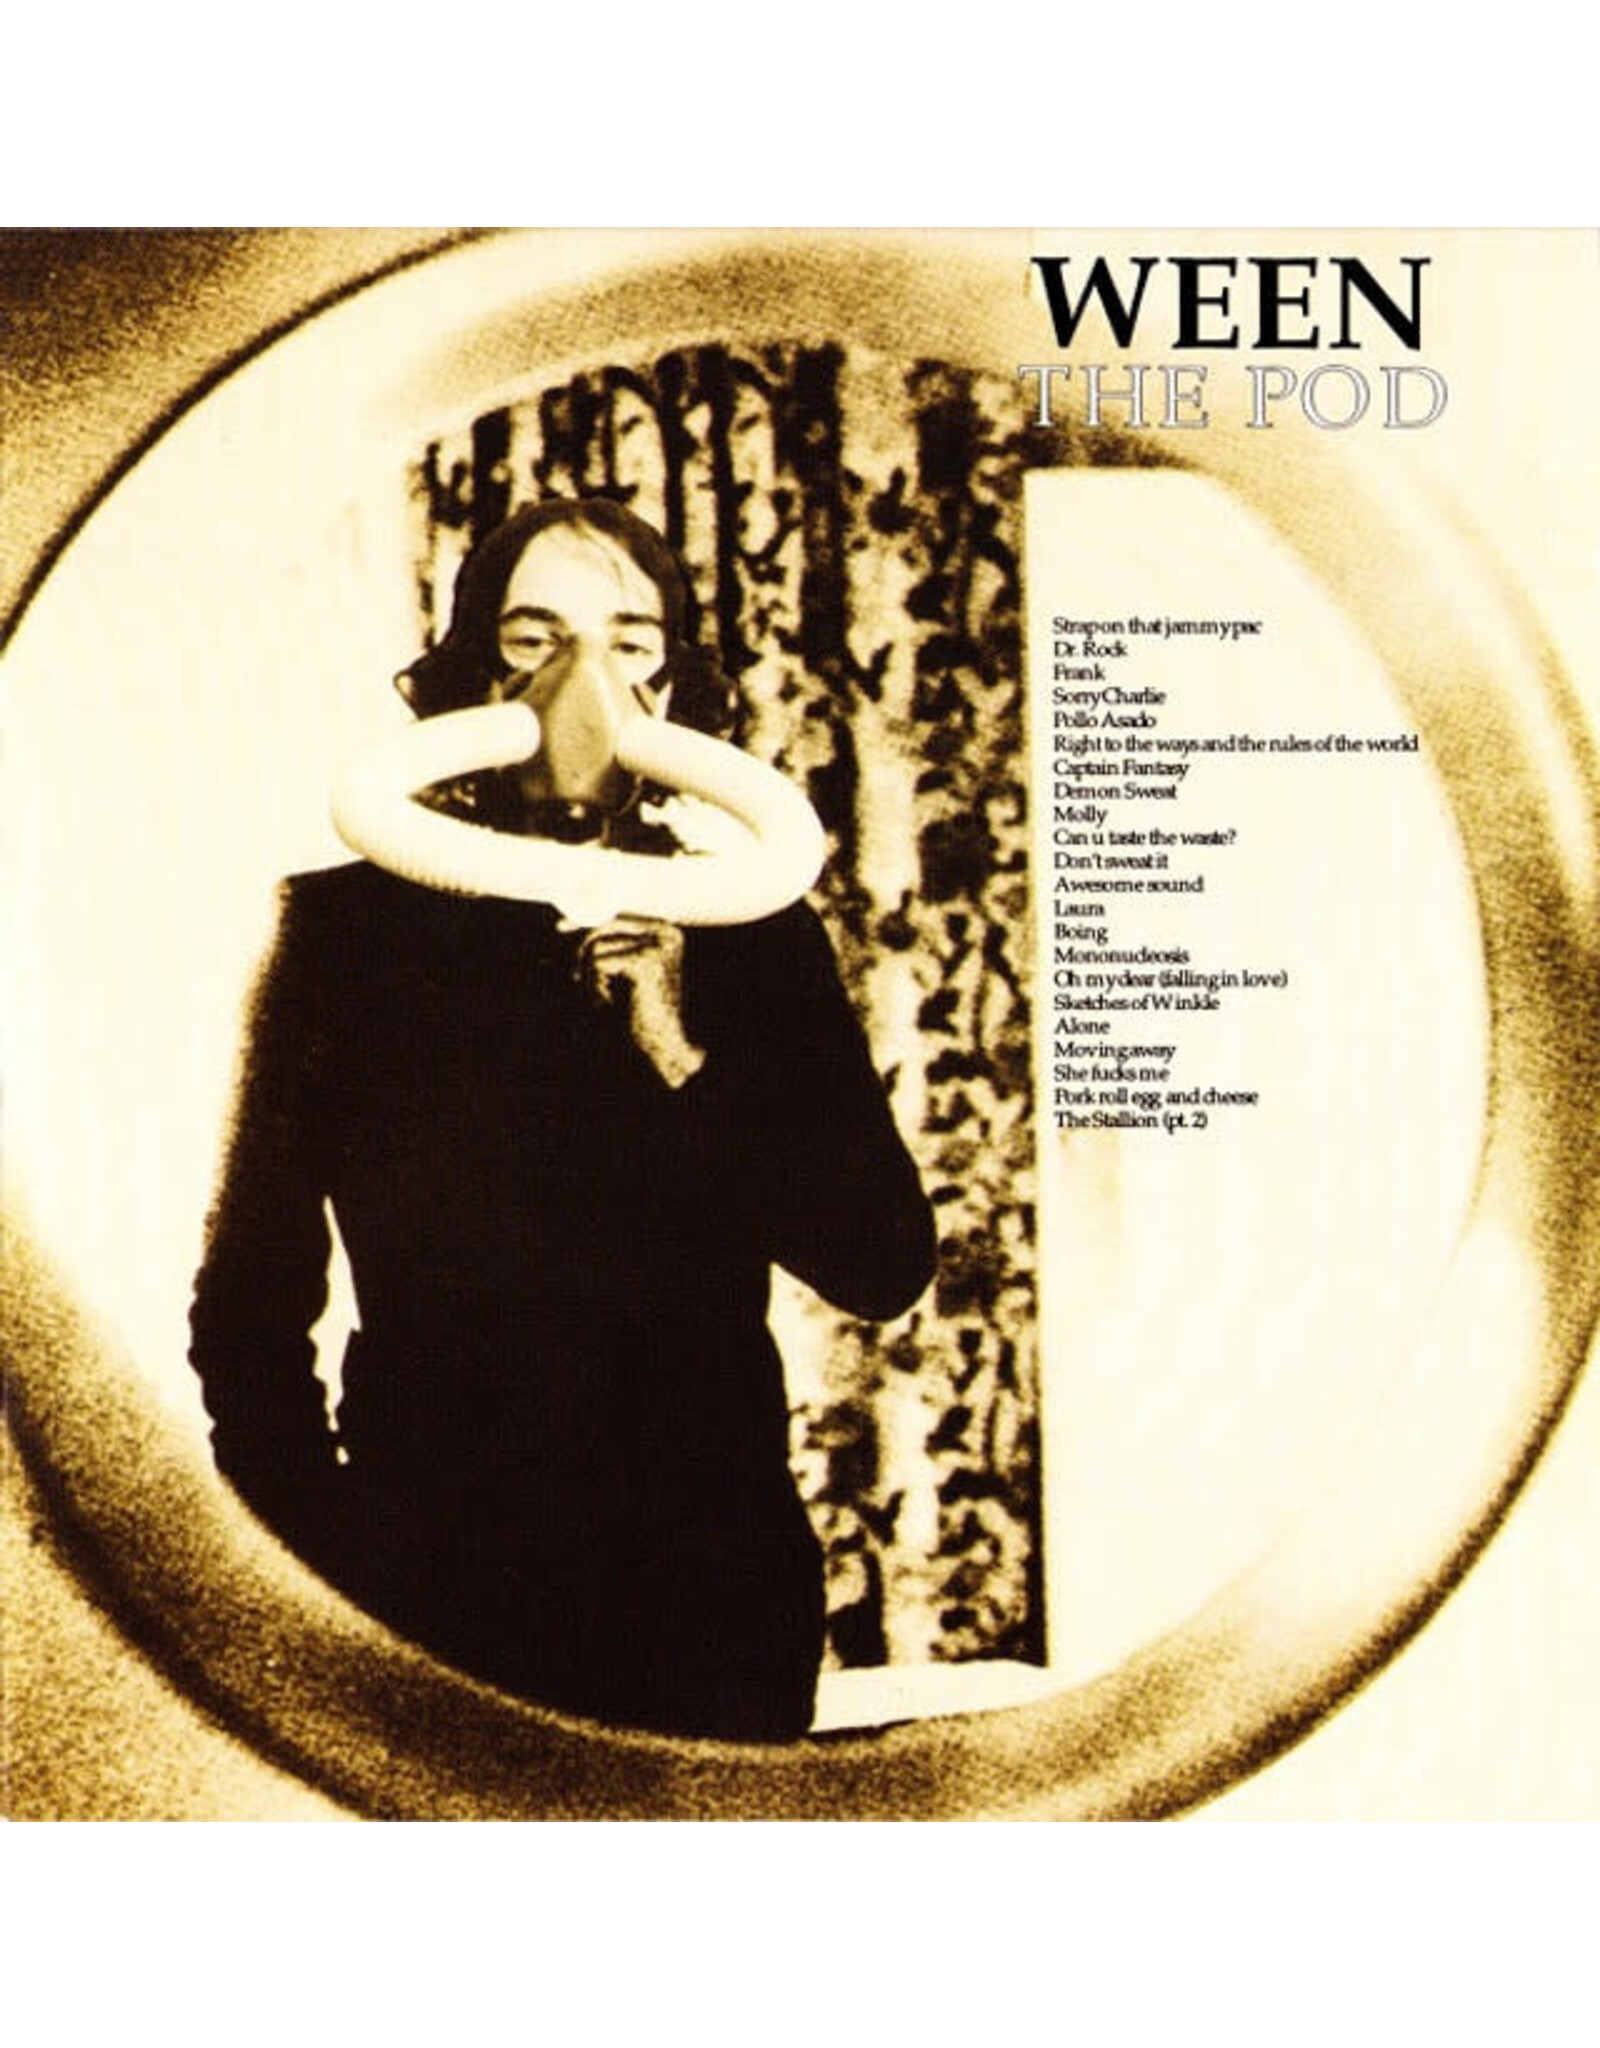 ATO Ween: The Pod (Fuscus Edition) (brown & cream) LP